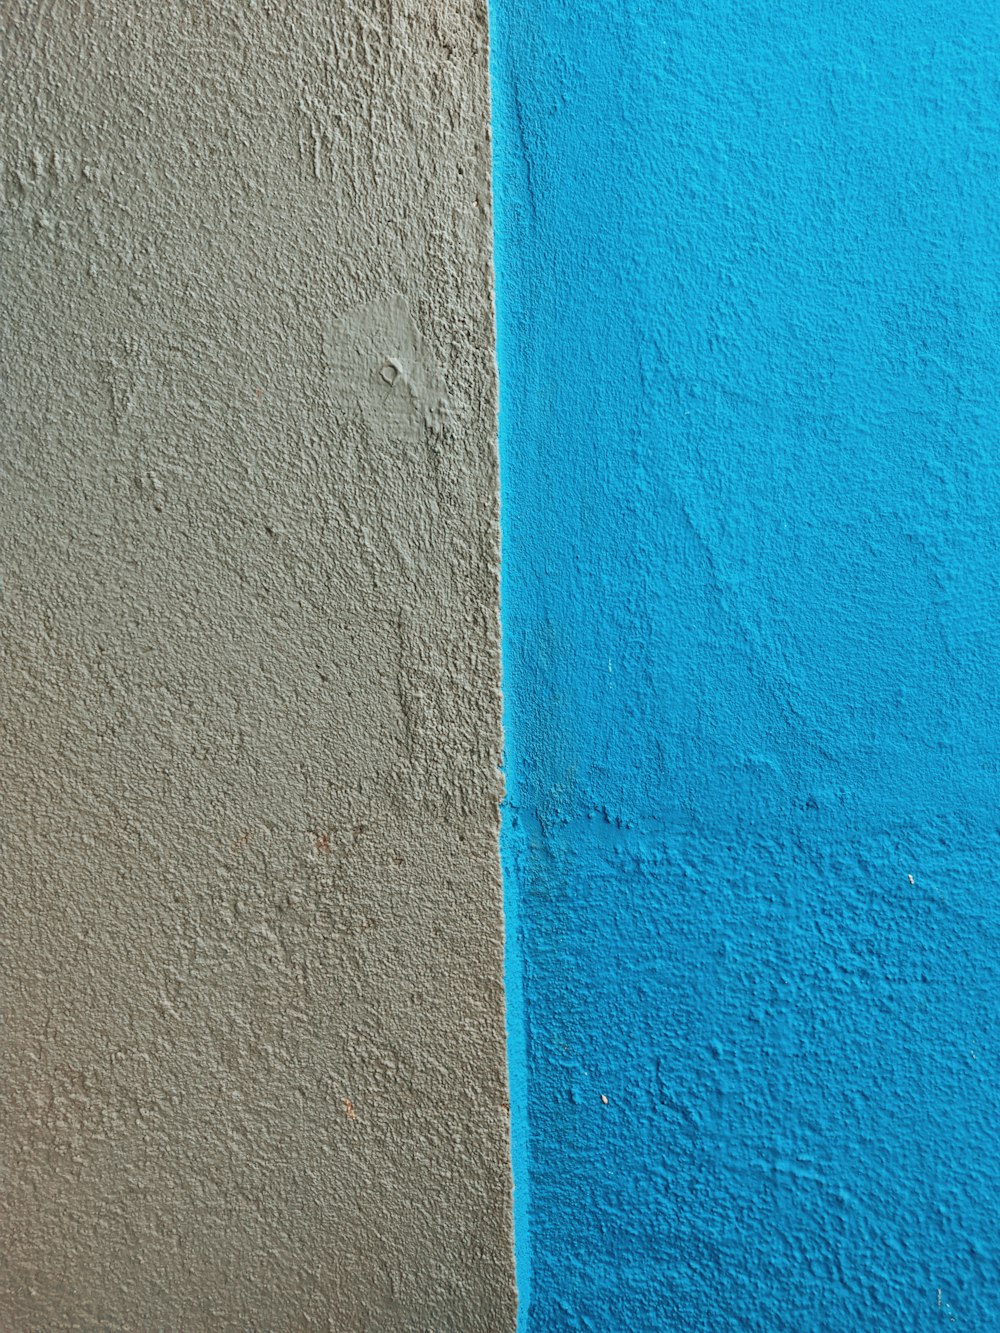 파란색과 주황색 페인트 벽